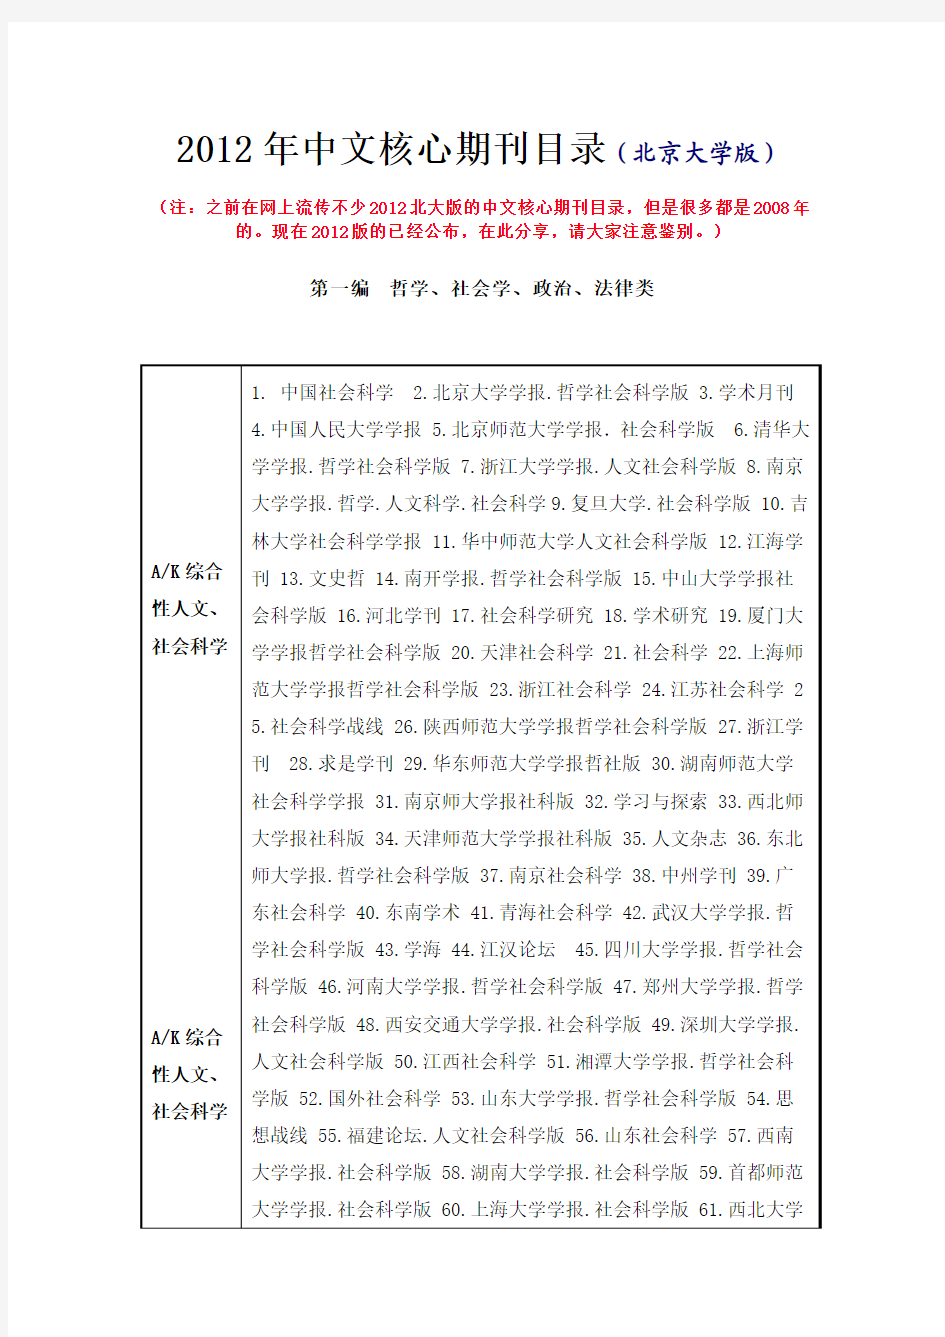 2012年中文核心期刊目录(北京大学版)